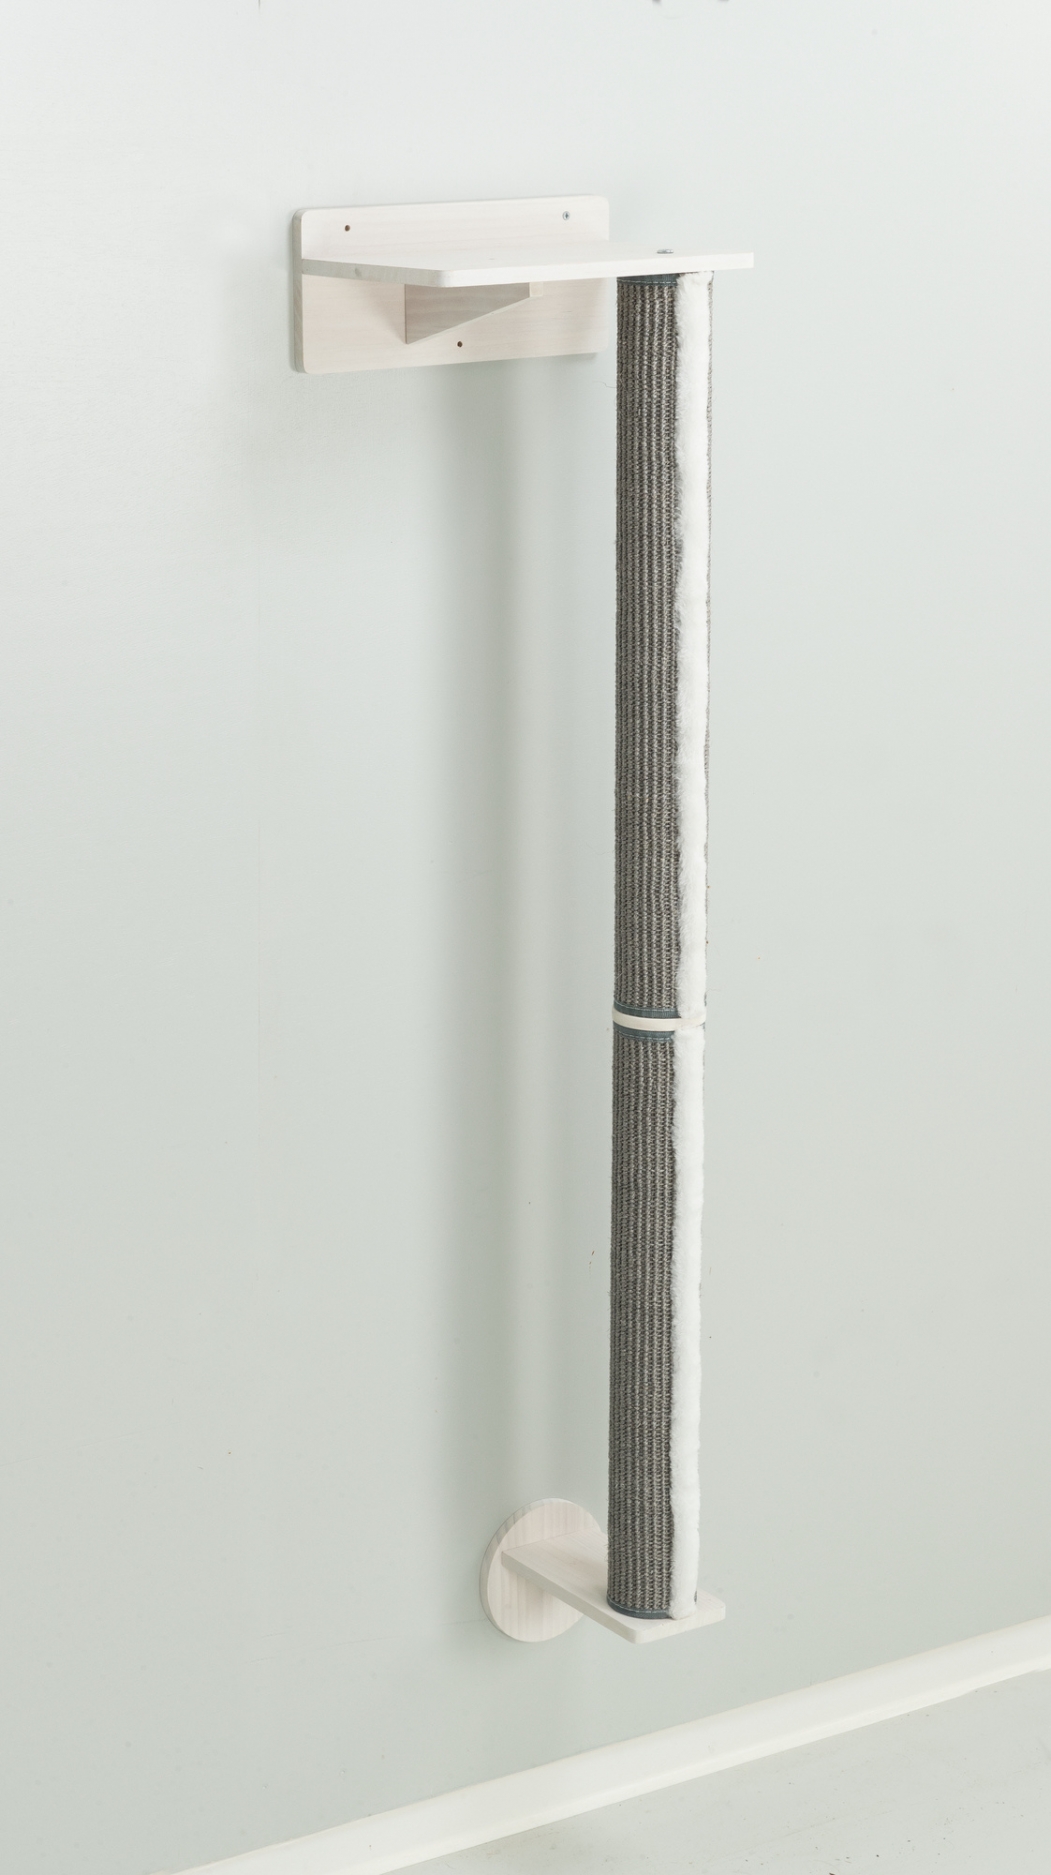 muur-set 1 , stam met muurbeugels, 35*130*25cm,wit/grijs